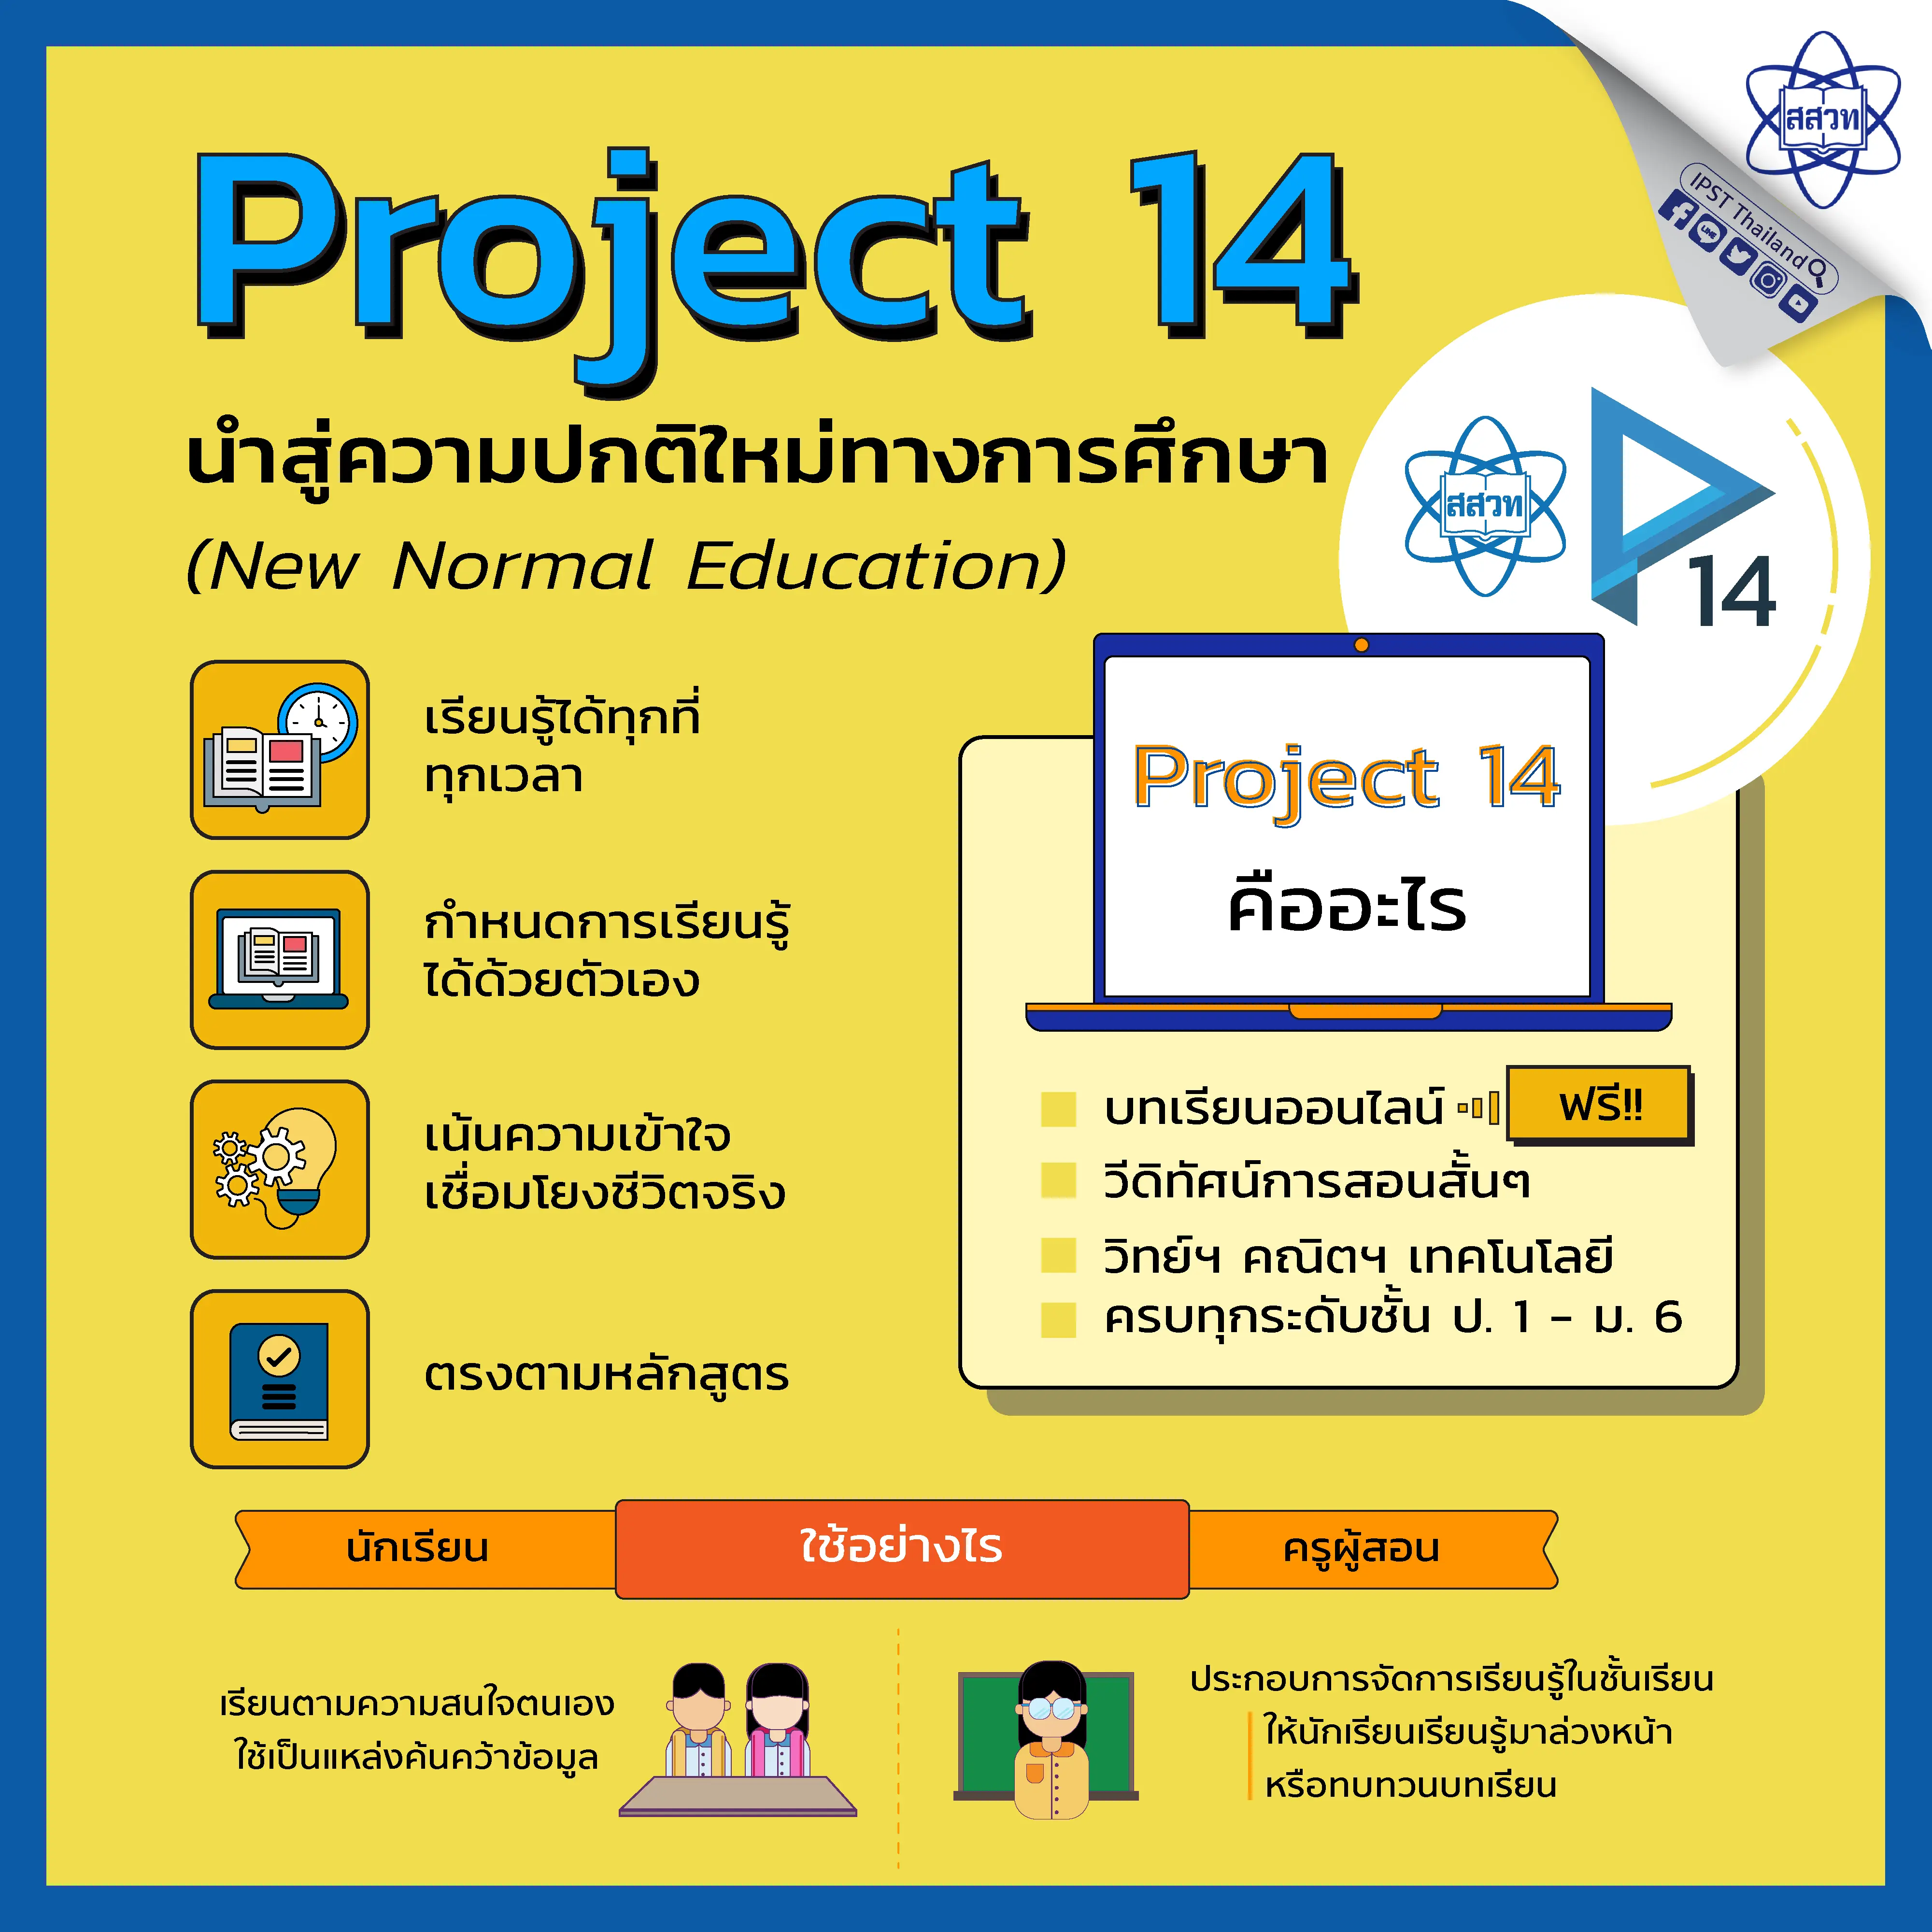 คุณครูต้องรู้!! โครงการสอนออนไลน์ Project14 สสวท.ครบทุกระดับชั้น ป.1-ม.6 วิทย์-คณิต-เทคโนโลยี